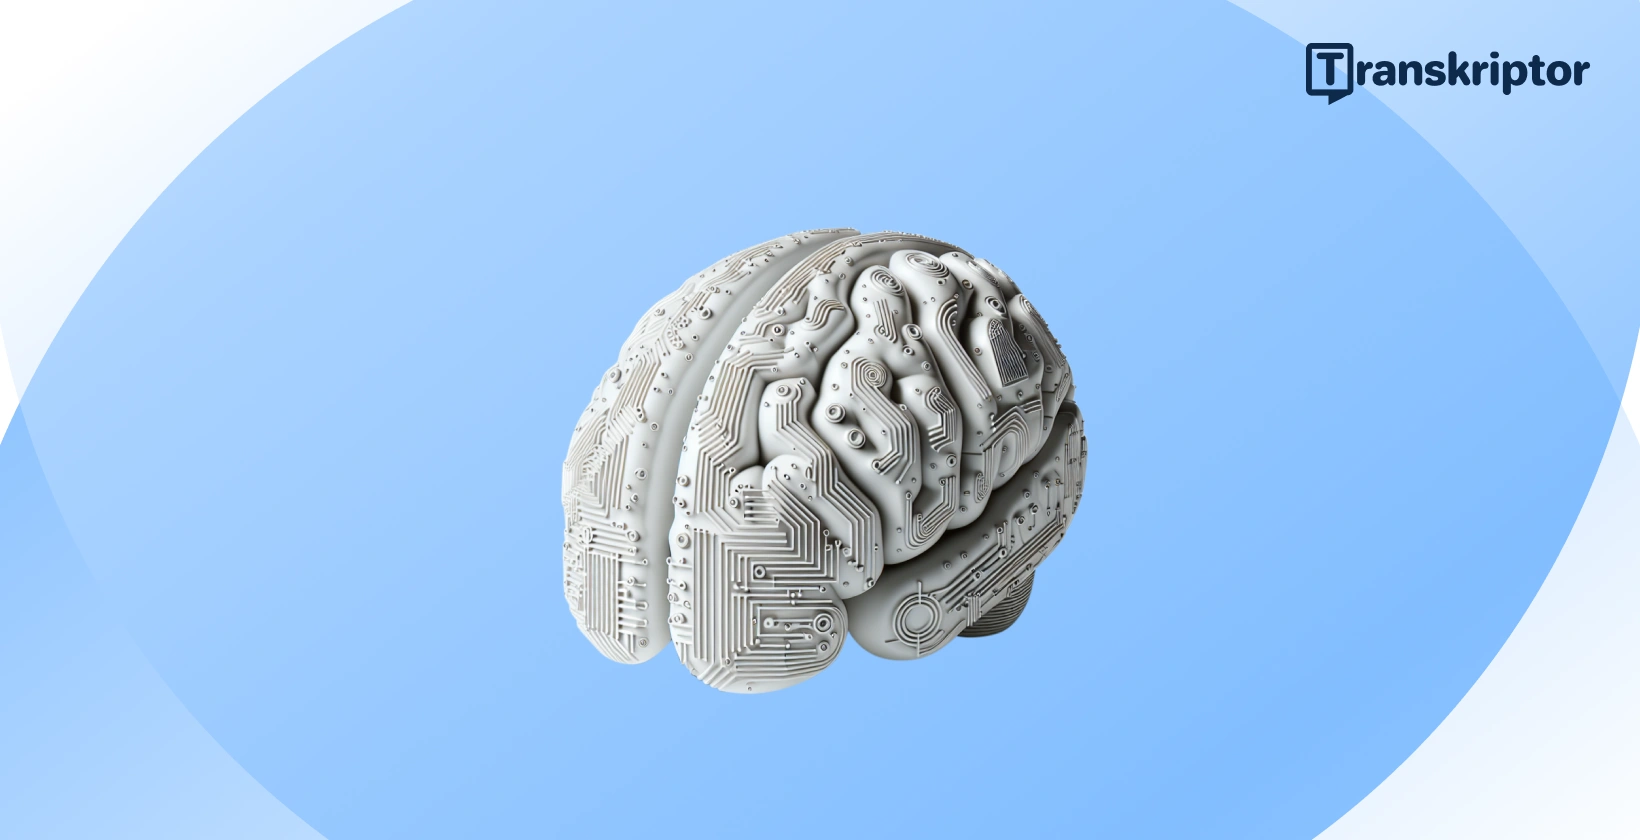 Ilustrácia AI mozgu odrážajúca integráciu umelej inteligencie do moderných účtovných postupov.